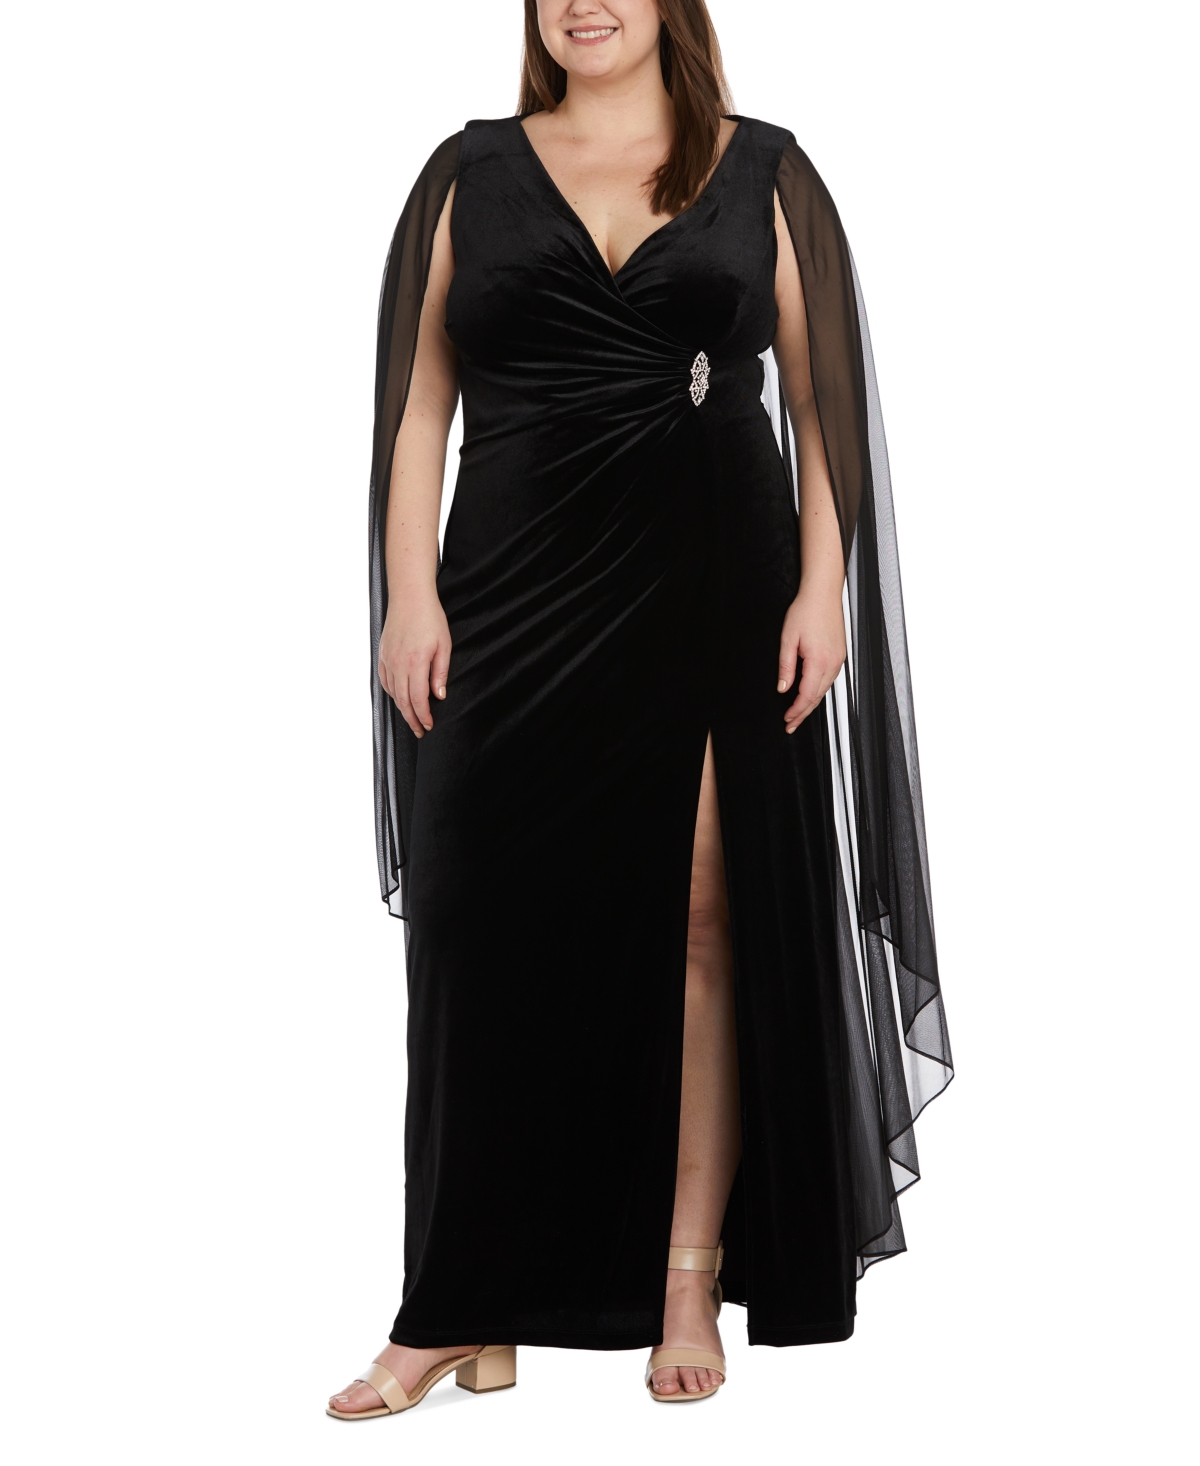 70s Prom, Formal, Evening, Party Dresses R  M Richards Plus Size Draped-Shoulder Side-Ruched Gown - Black $129.00 AT vintagedancer.com